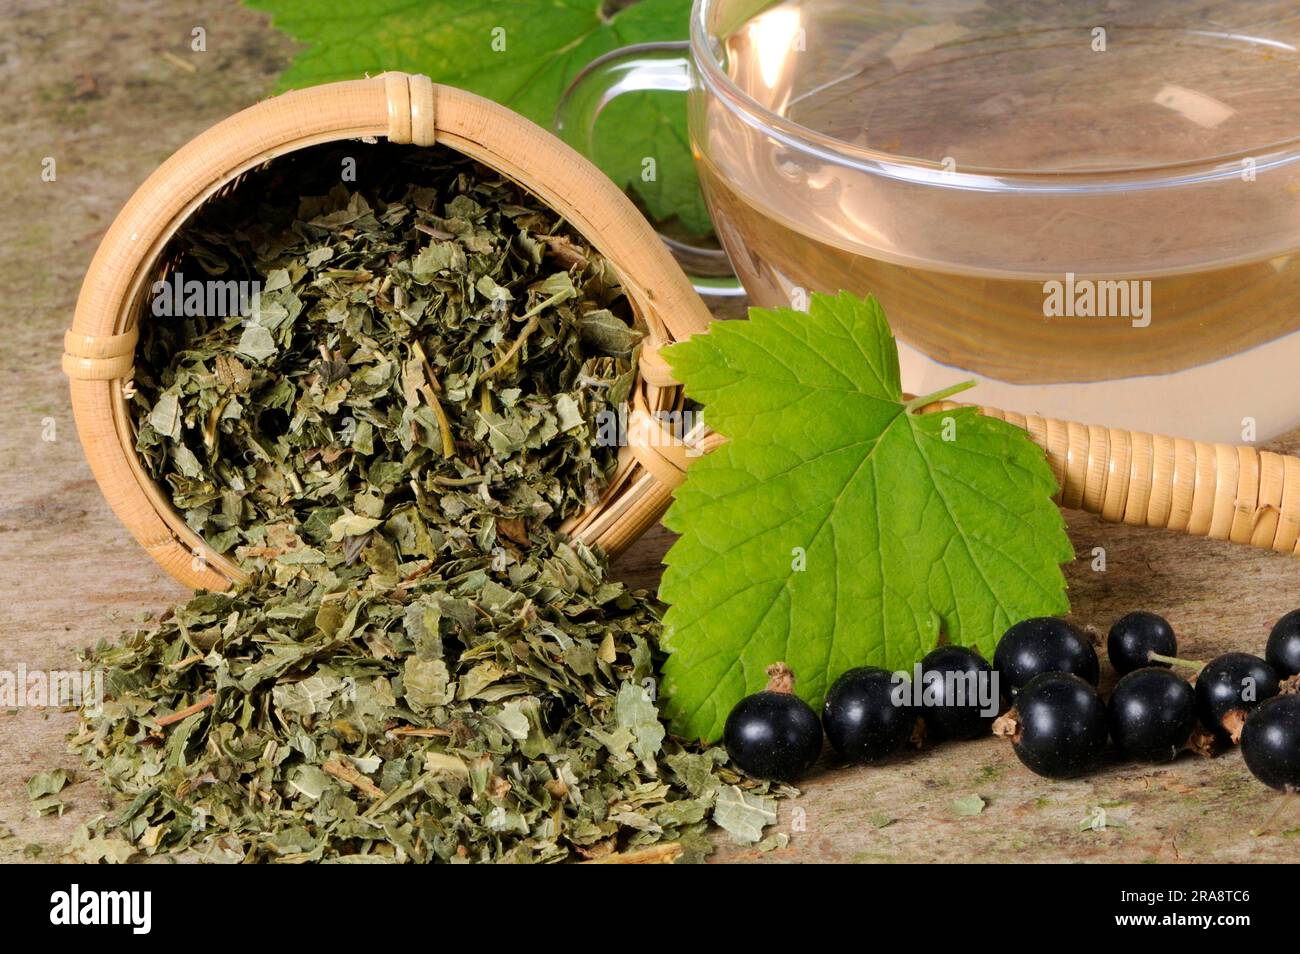 Black currant (Ribes nigrum), cup of currant tea Stock Photo